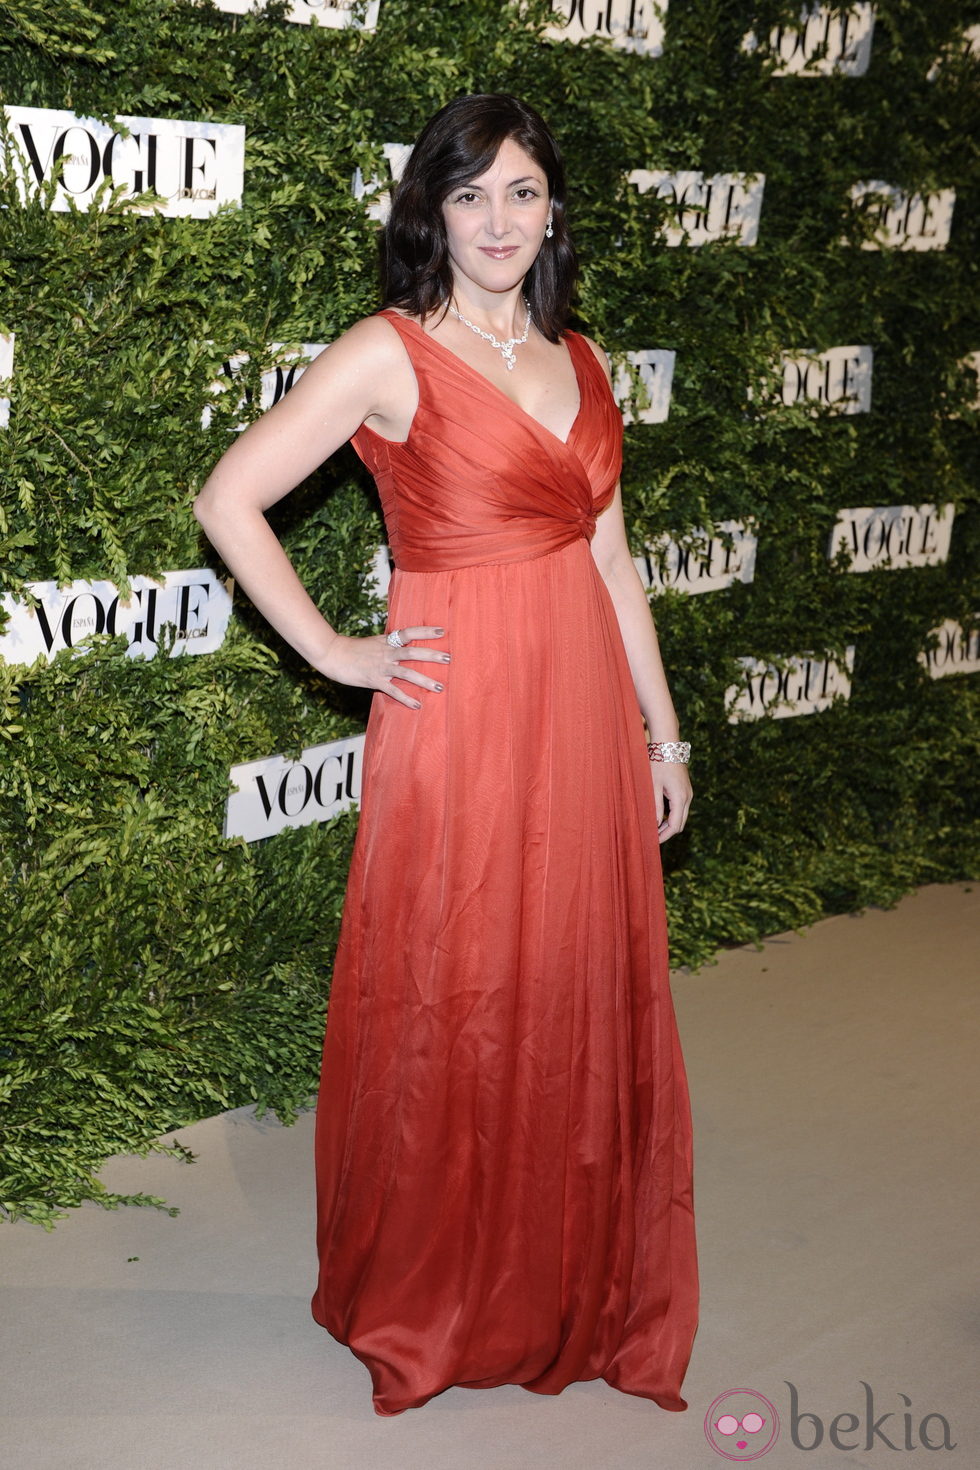 Espido Freire en los Premios Vogue Joyas 2011